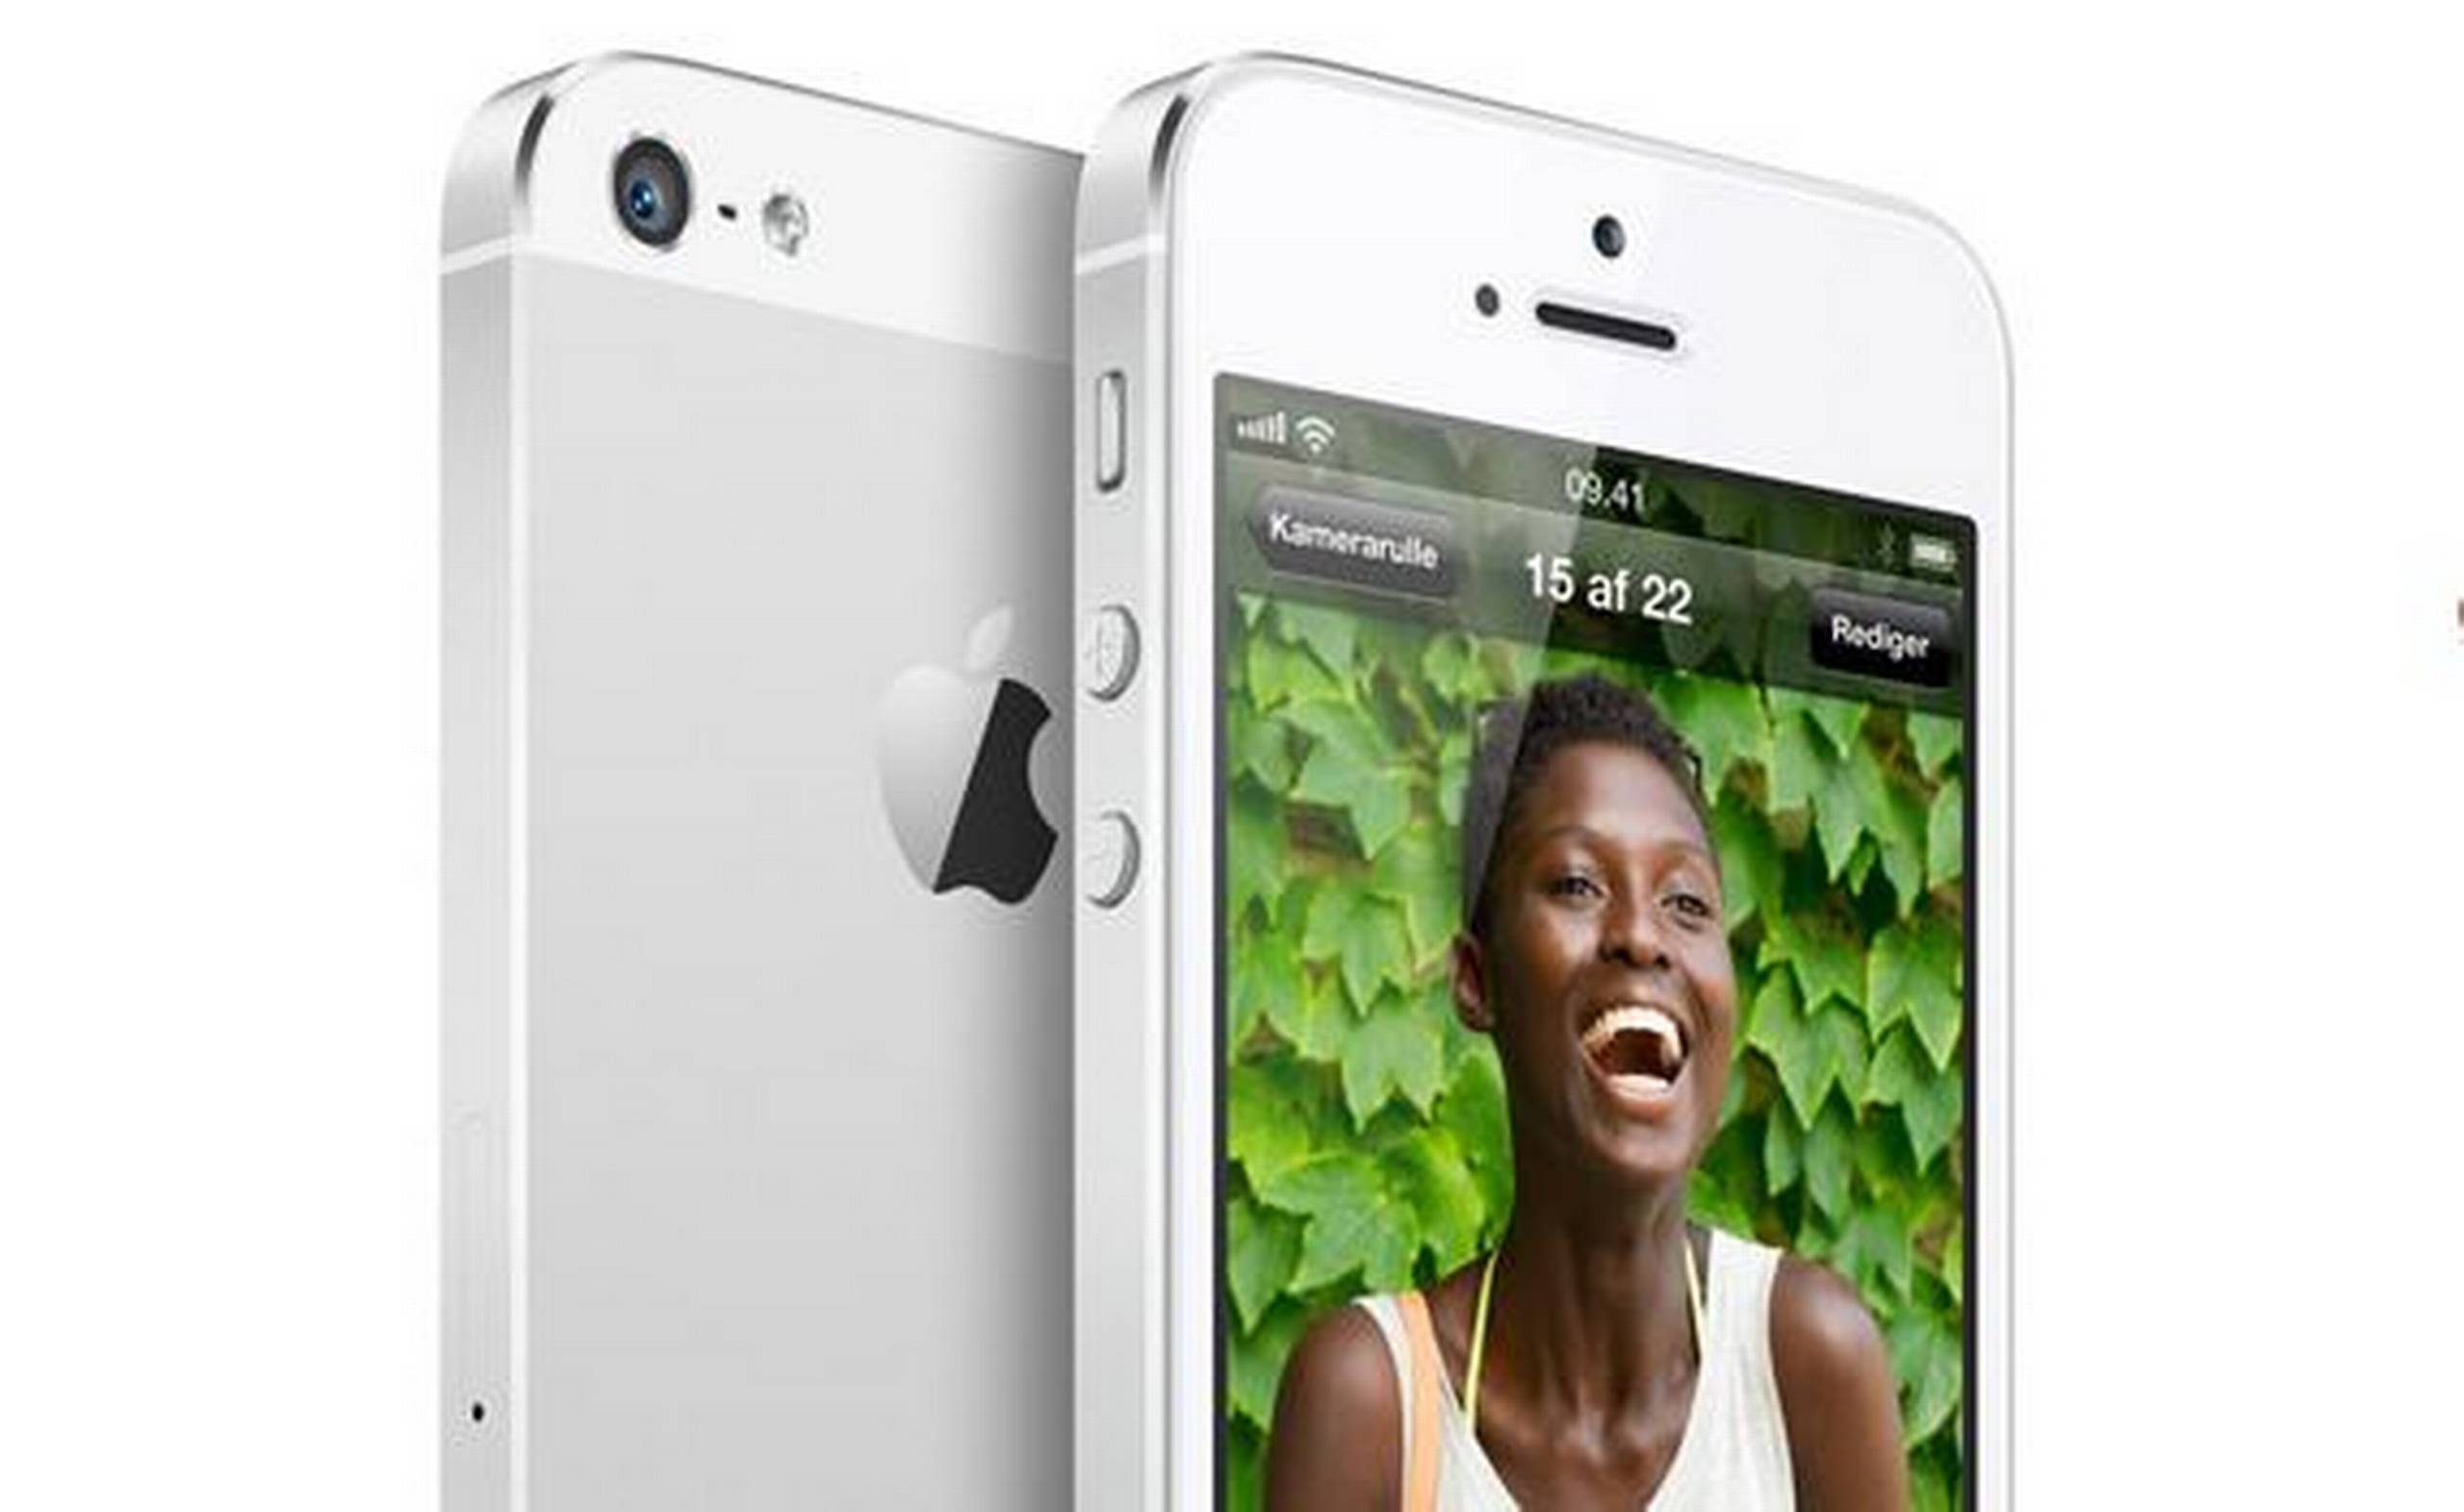 Klappe Ja Staple Apple tilbagekalder iPhone 5 med dårligt batteri